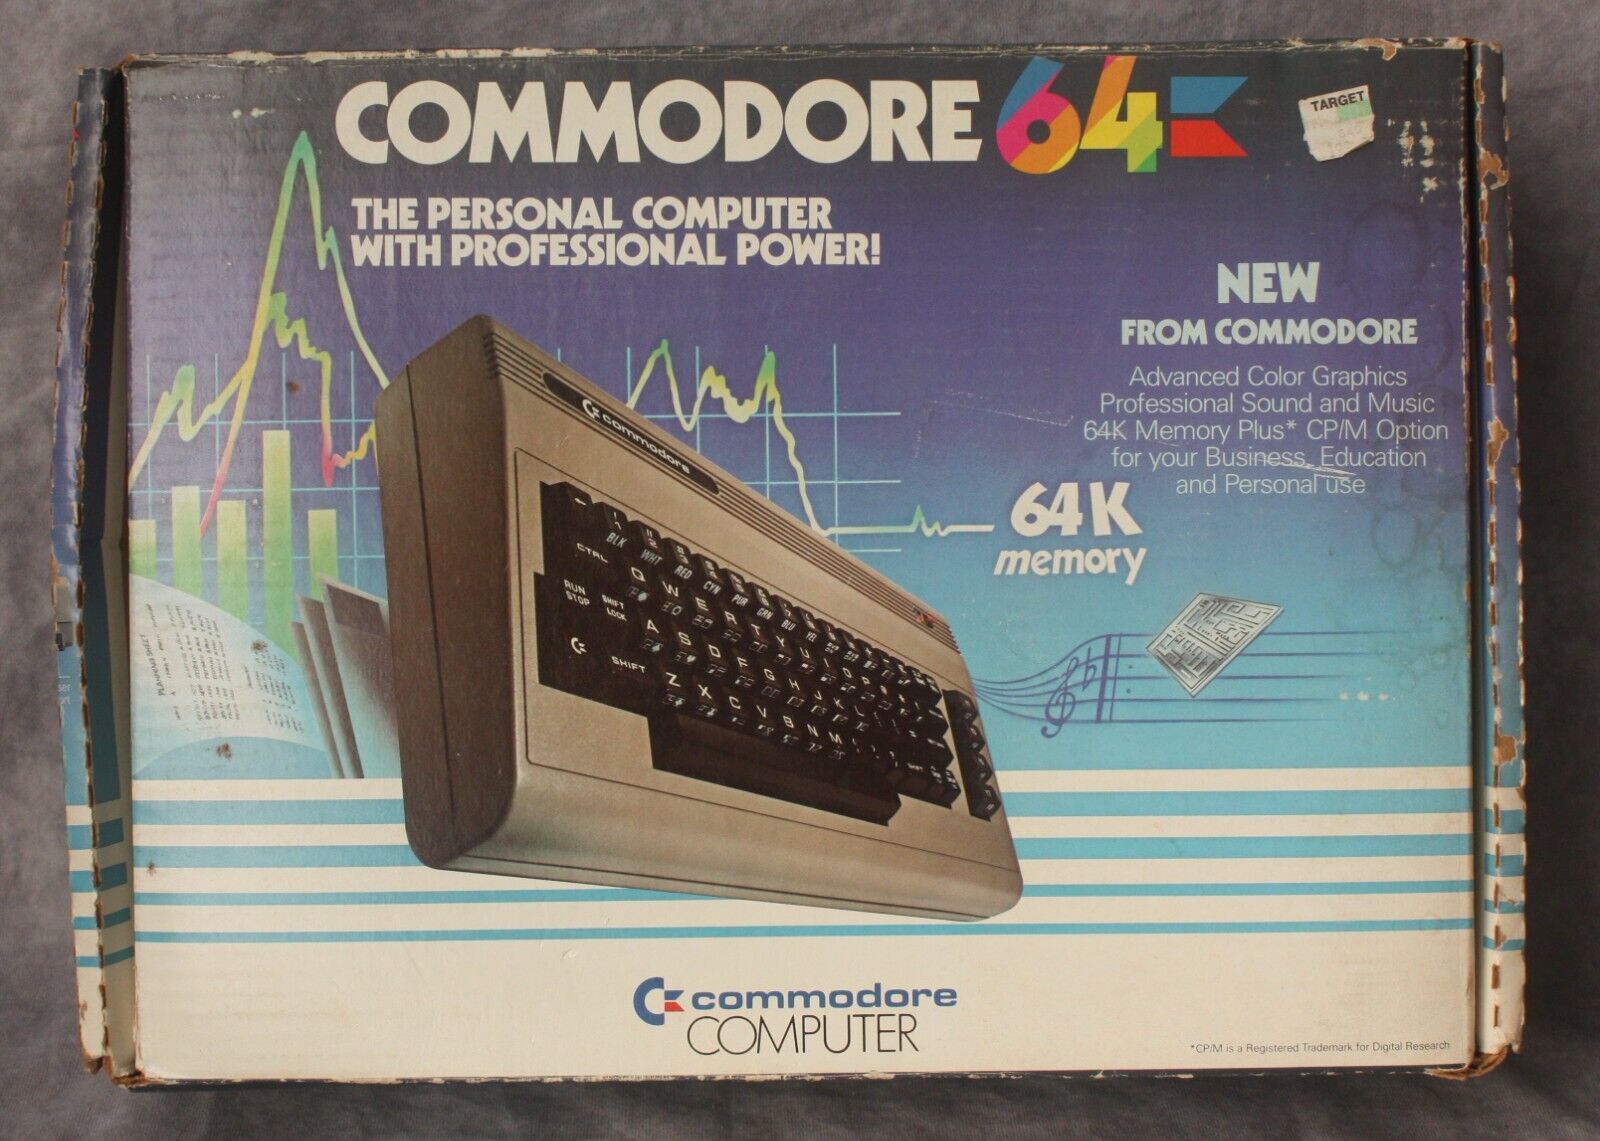 Commodore 64 Personal Computer